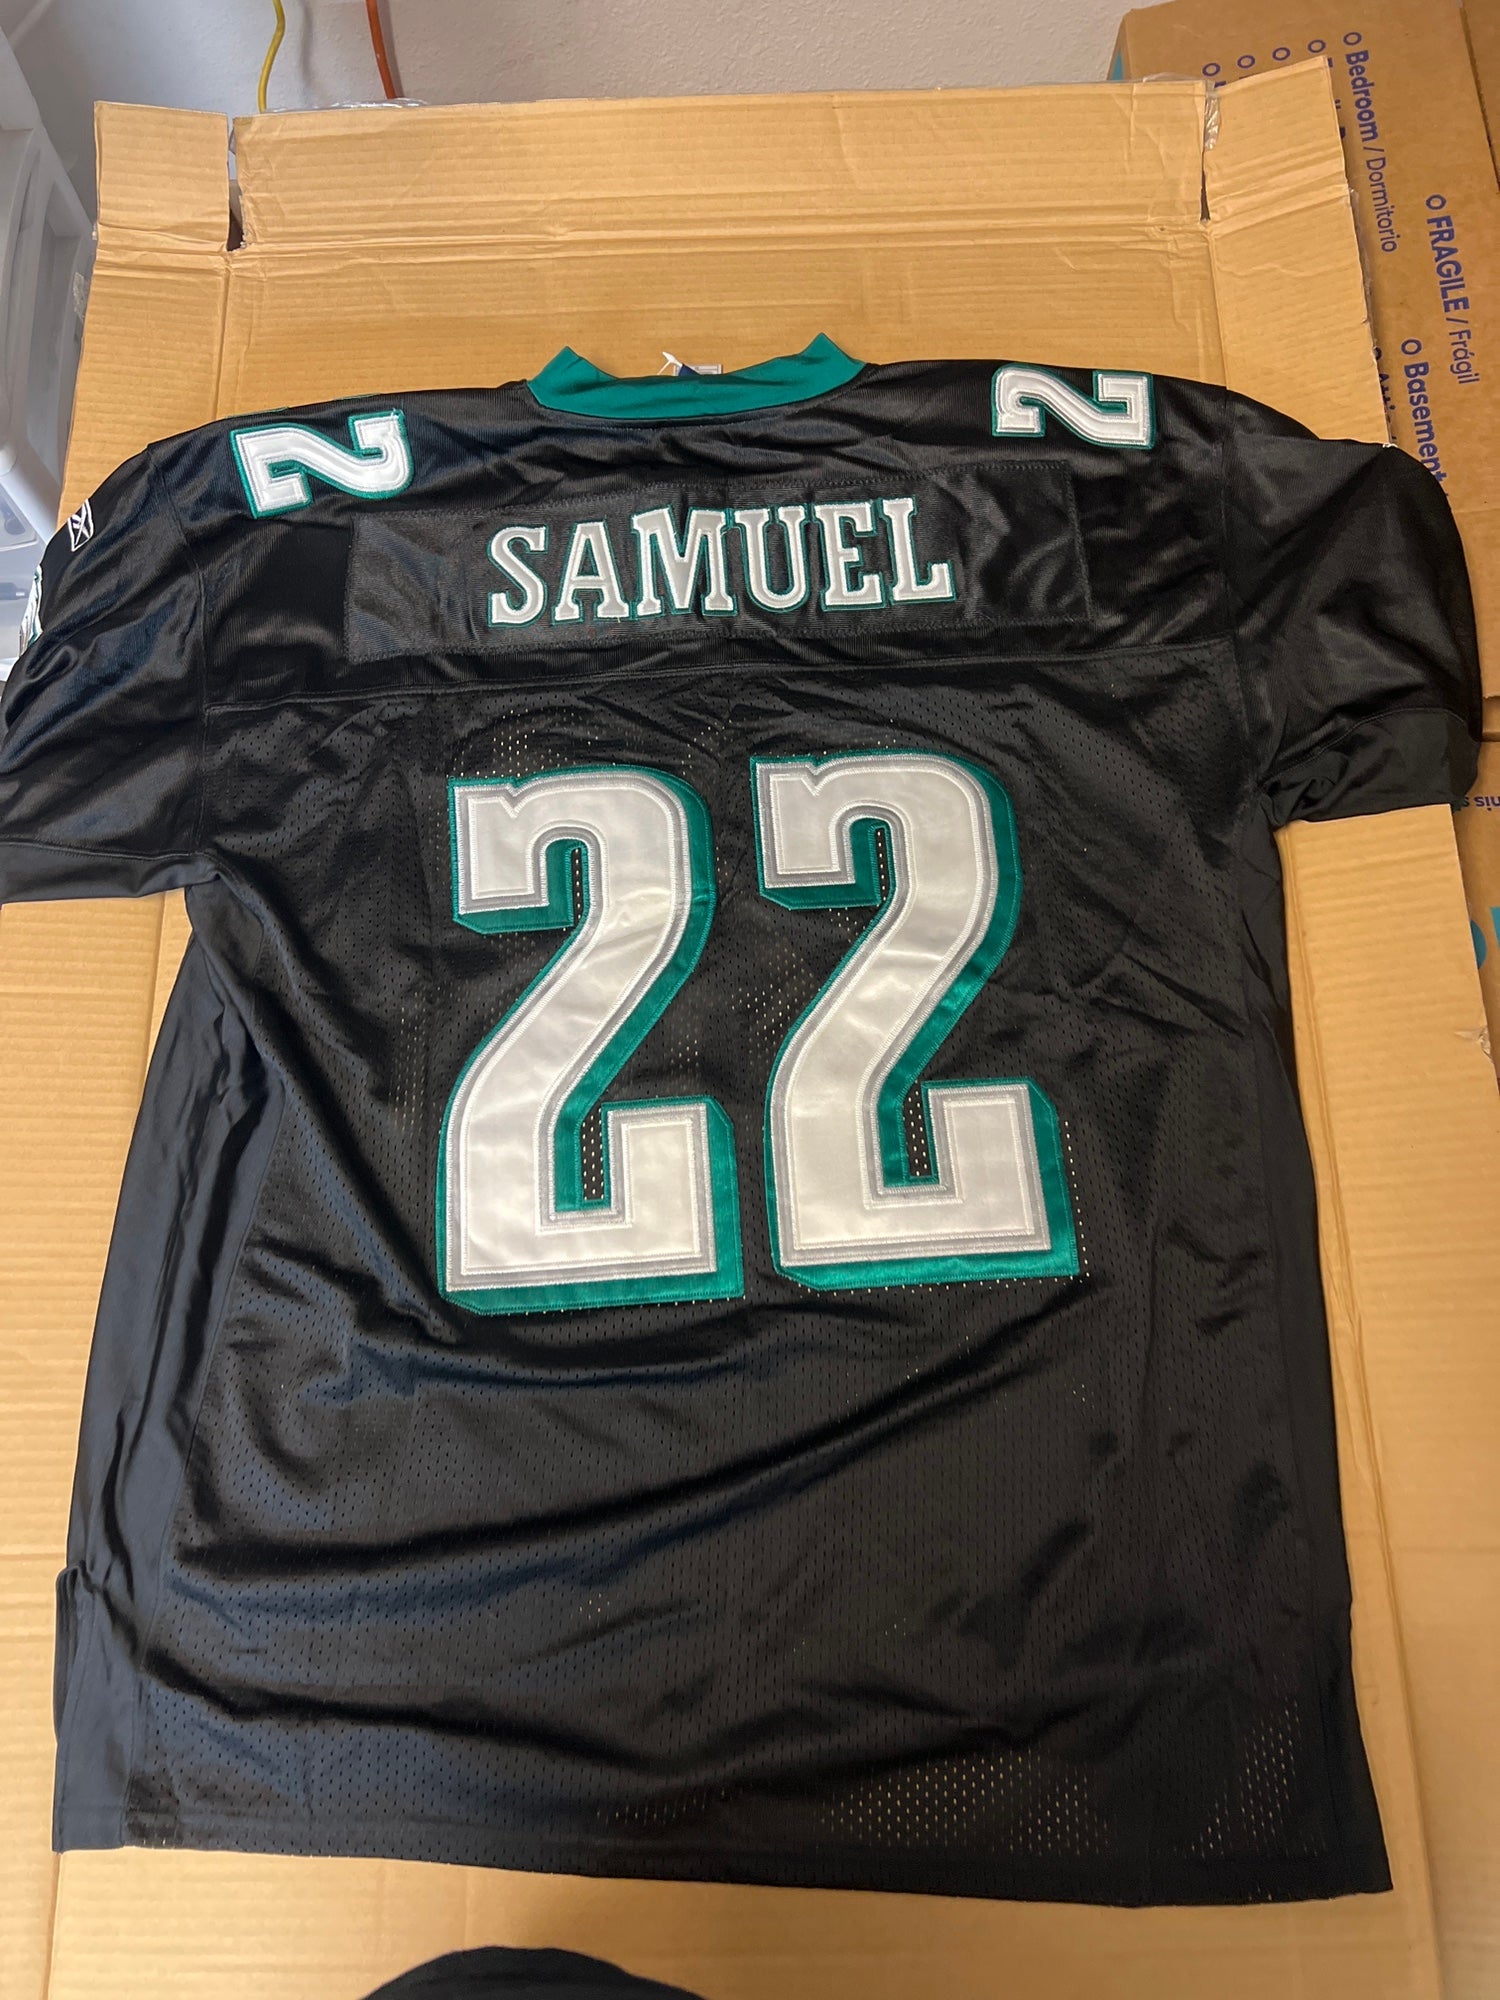 Philadelphia Eagles New Size 54 Reebok Jersey Samuel 22